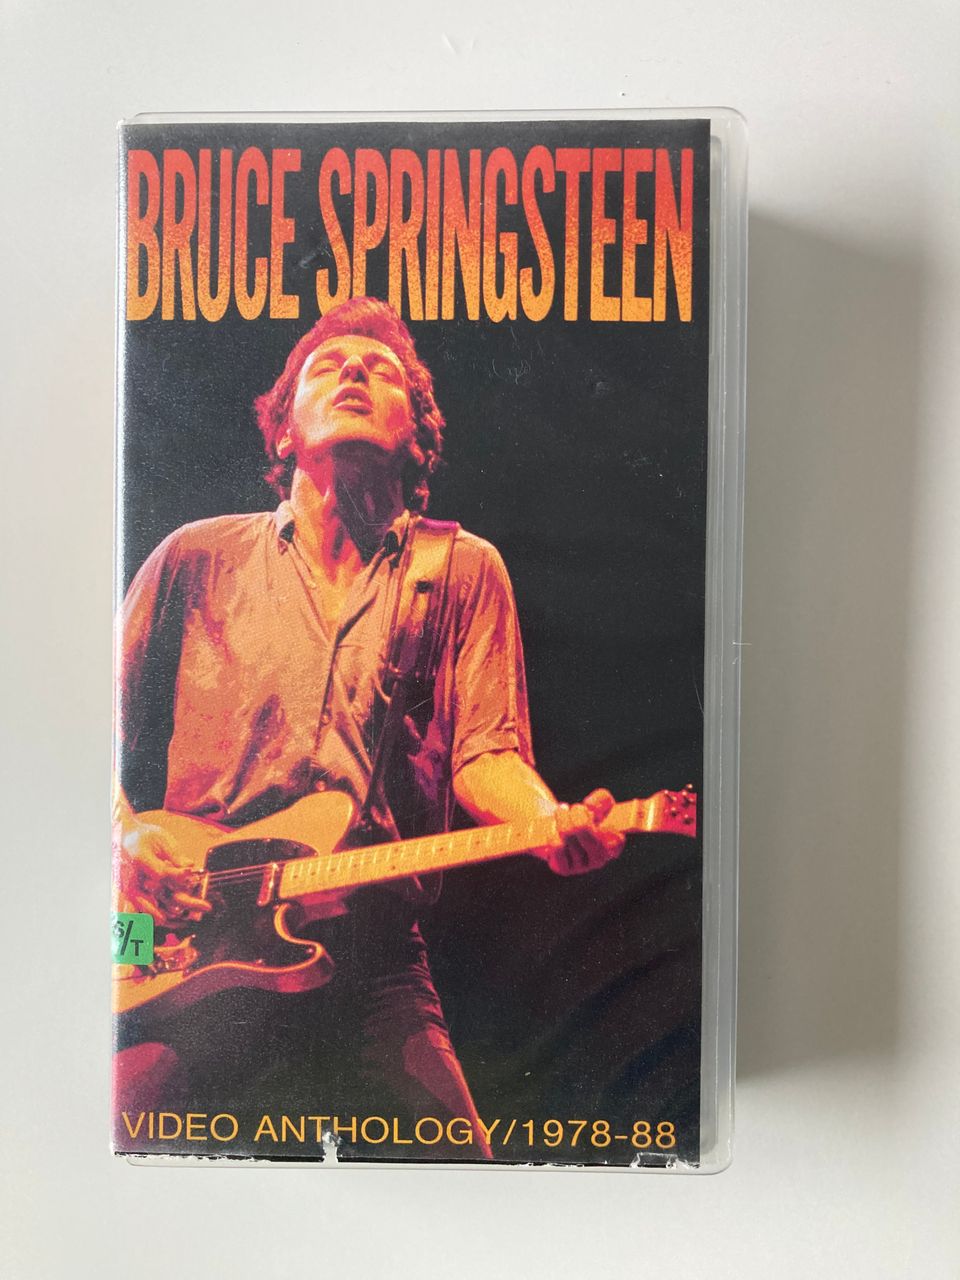 Bruce Springsteen video anthology/1978-88